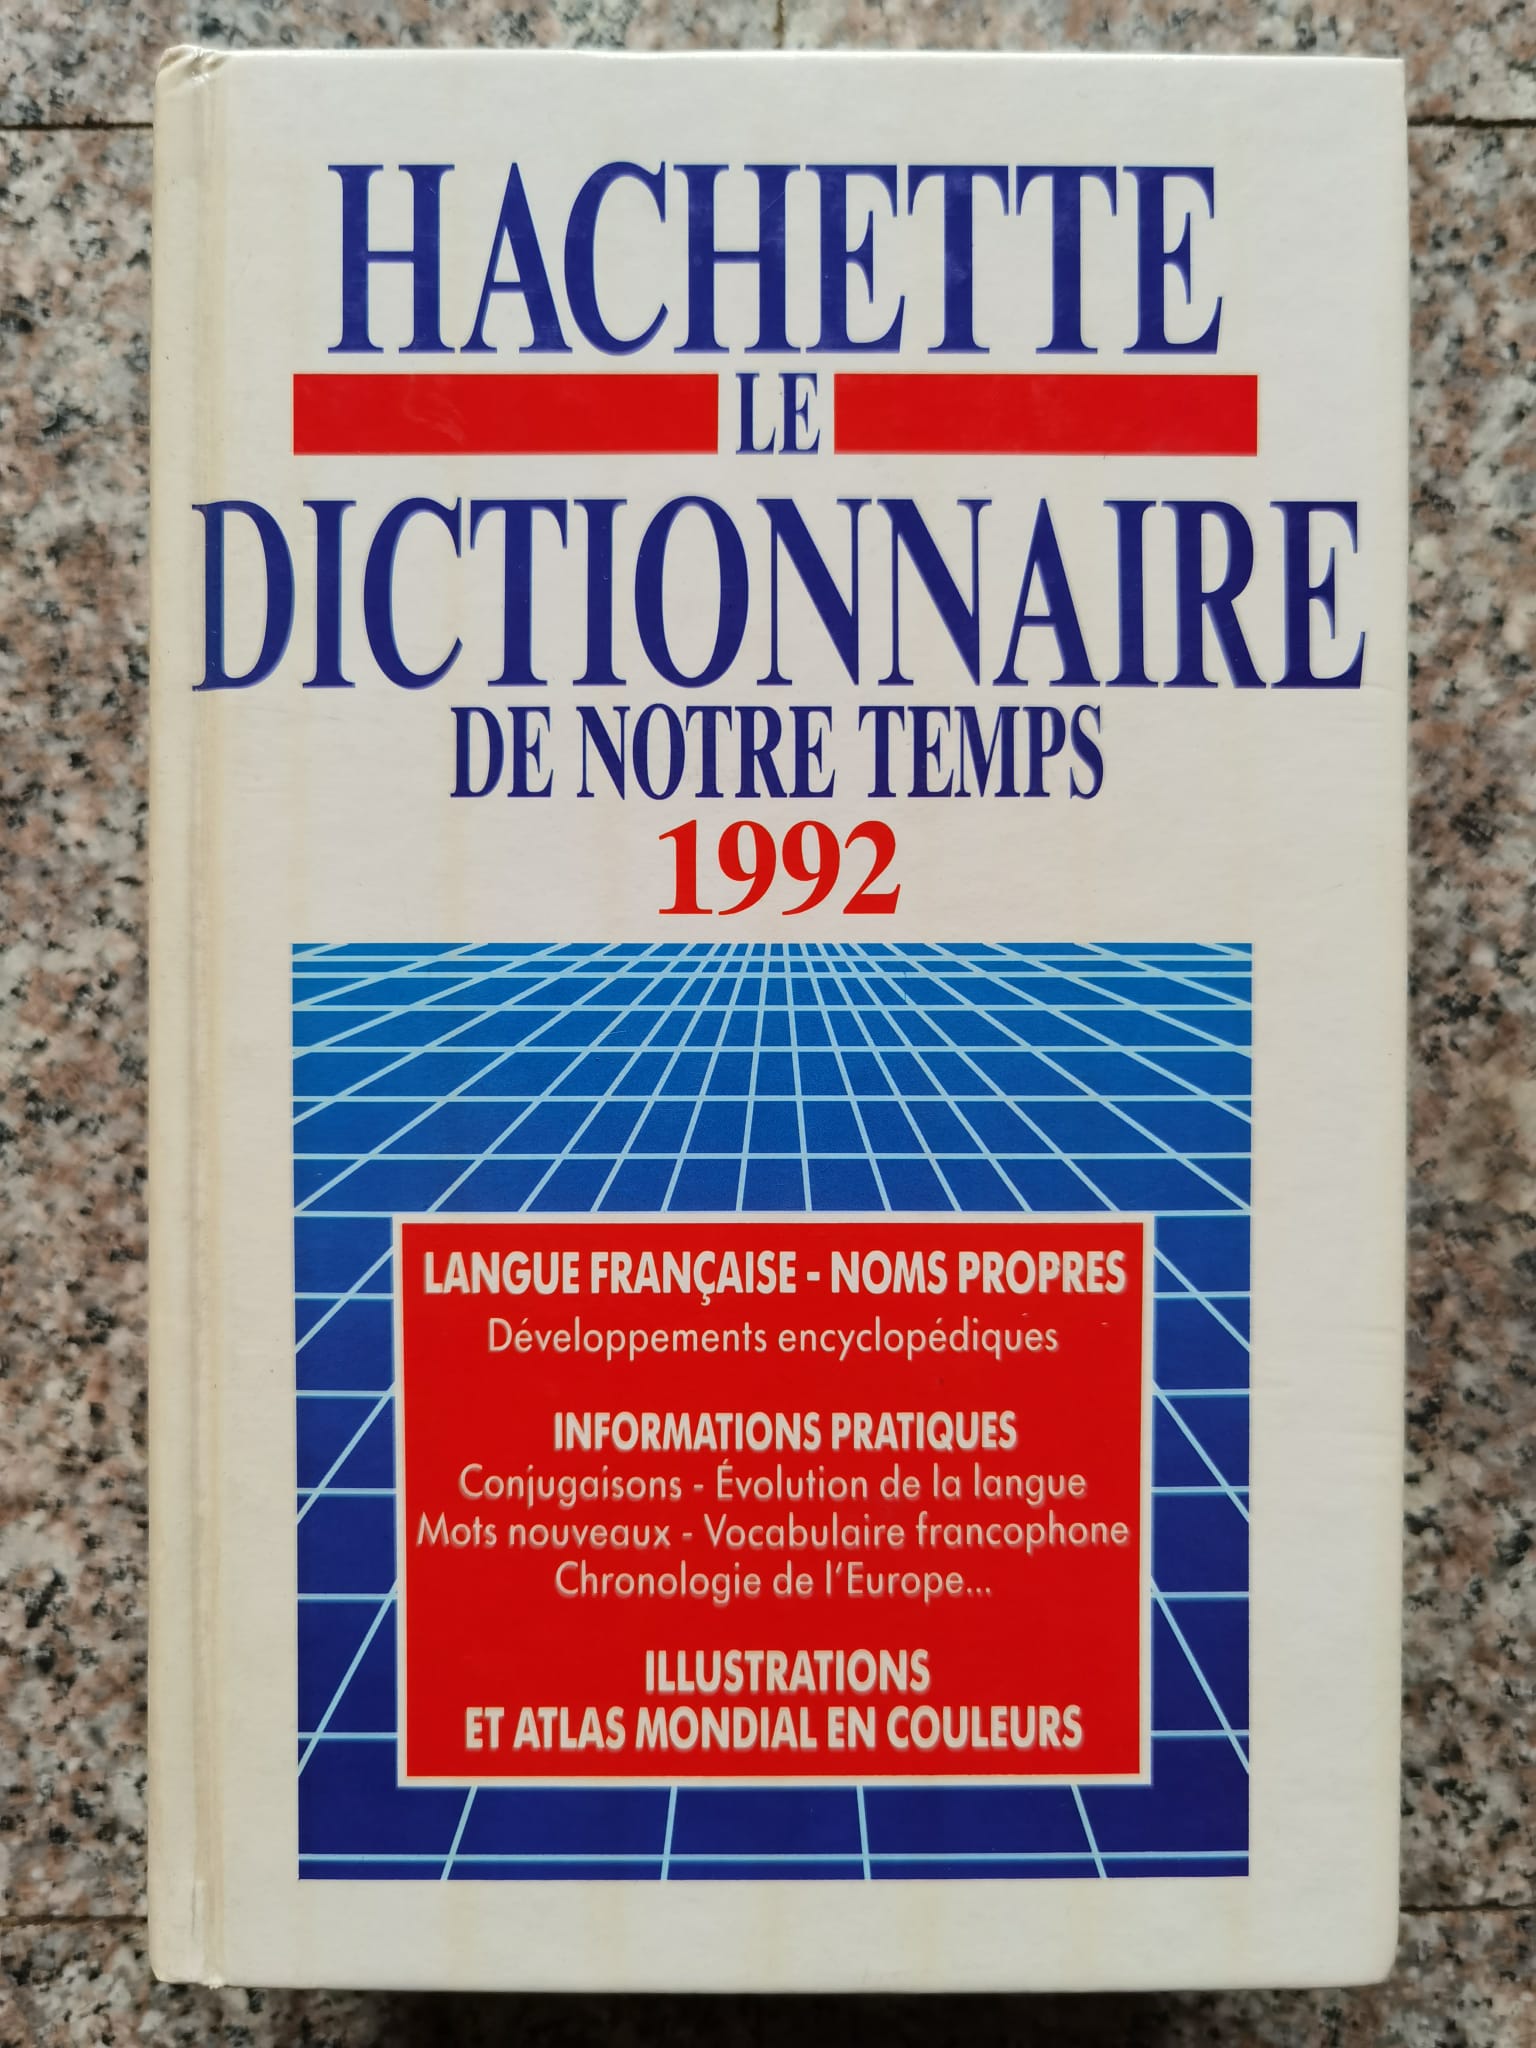 hachette le dictionnaire de notre temps 1992                                                         colectiv                                                                                            